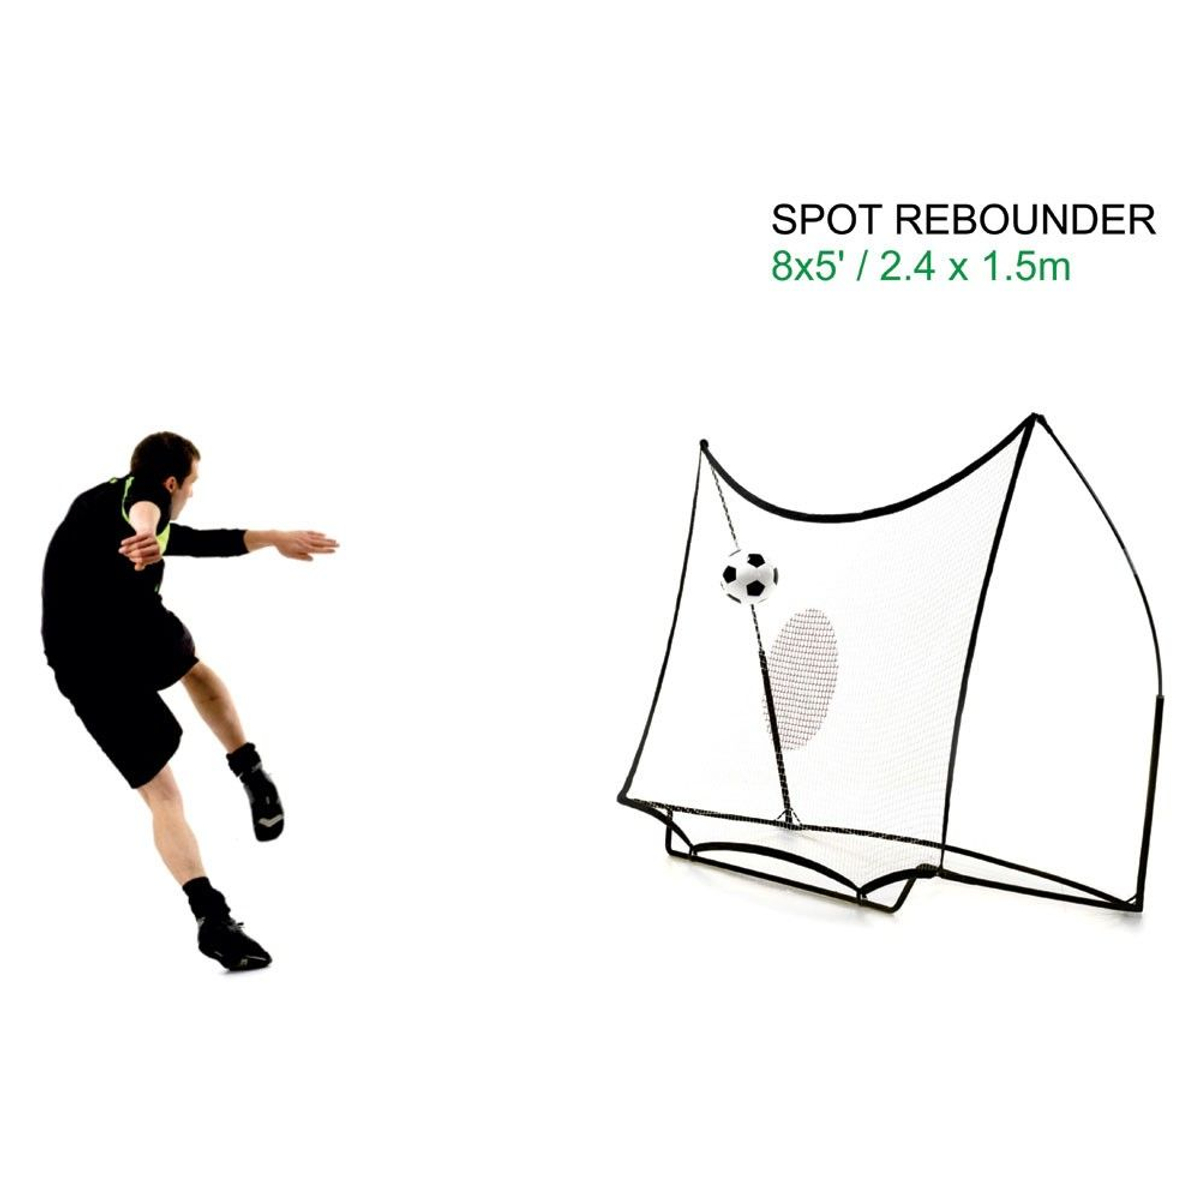 Quickplay Spot Rebounder 8x5